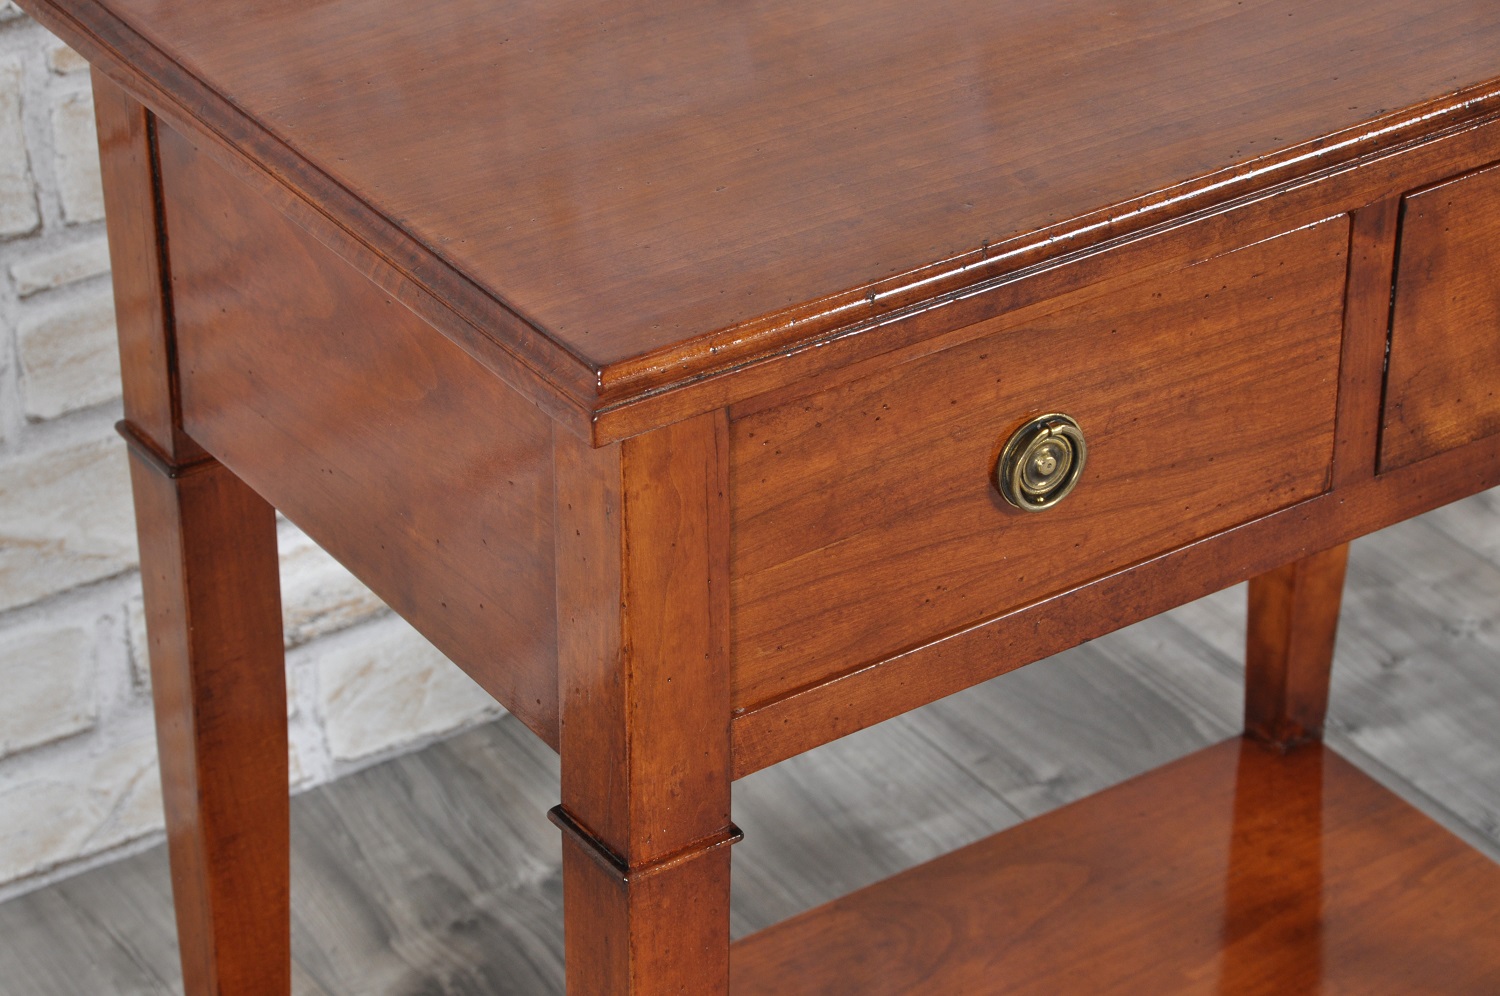 il brand di lusso Vangelista mobili ha realizzato il tavolino mobiletto con cassetti e un piano inferiore prodotto a mano e su misura dalla forma rettangolare del comodino artigianale